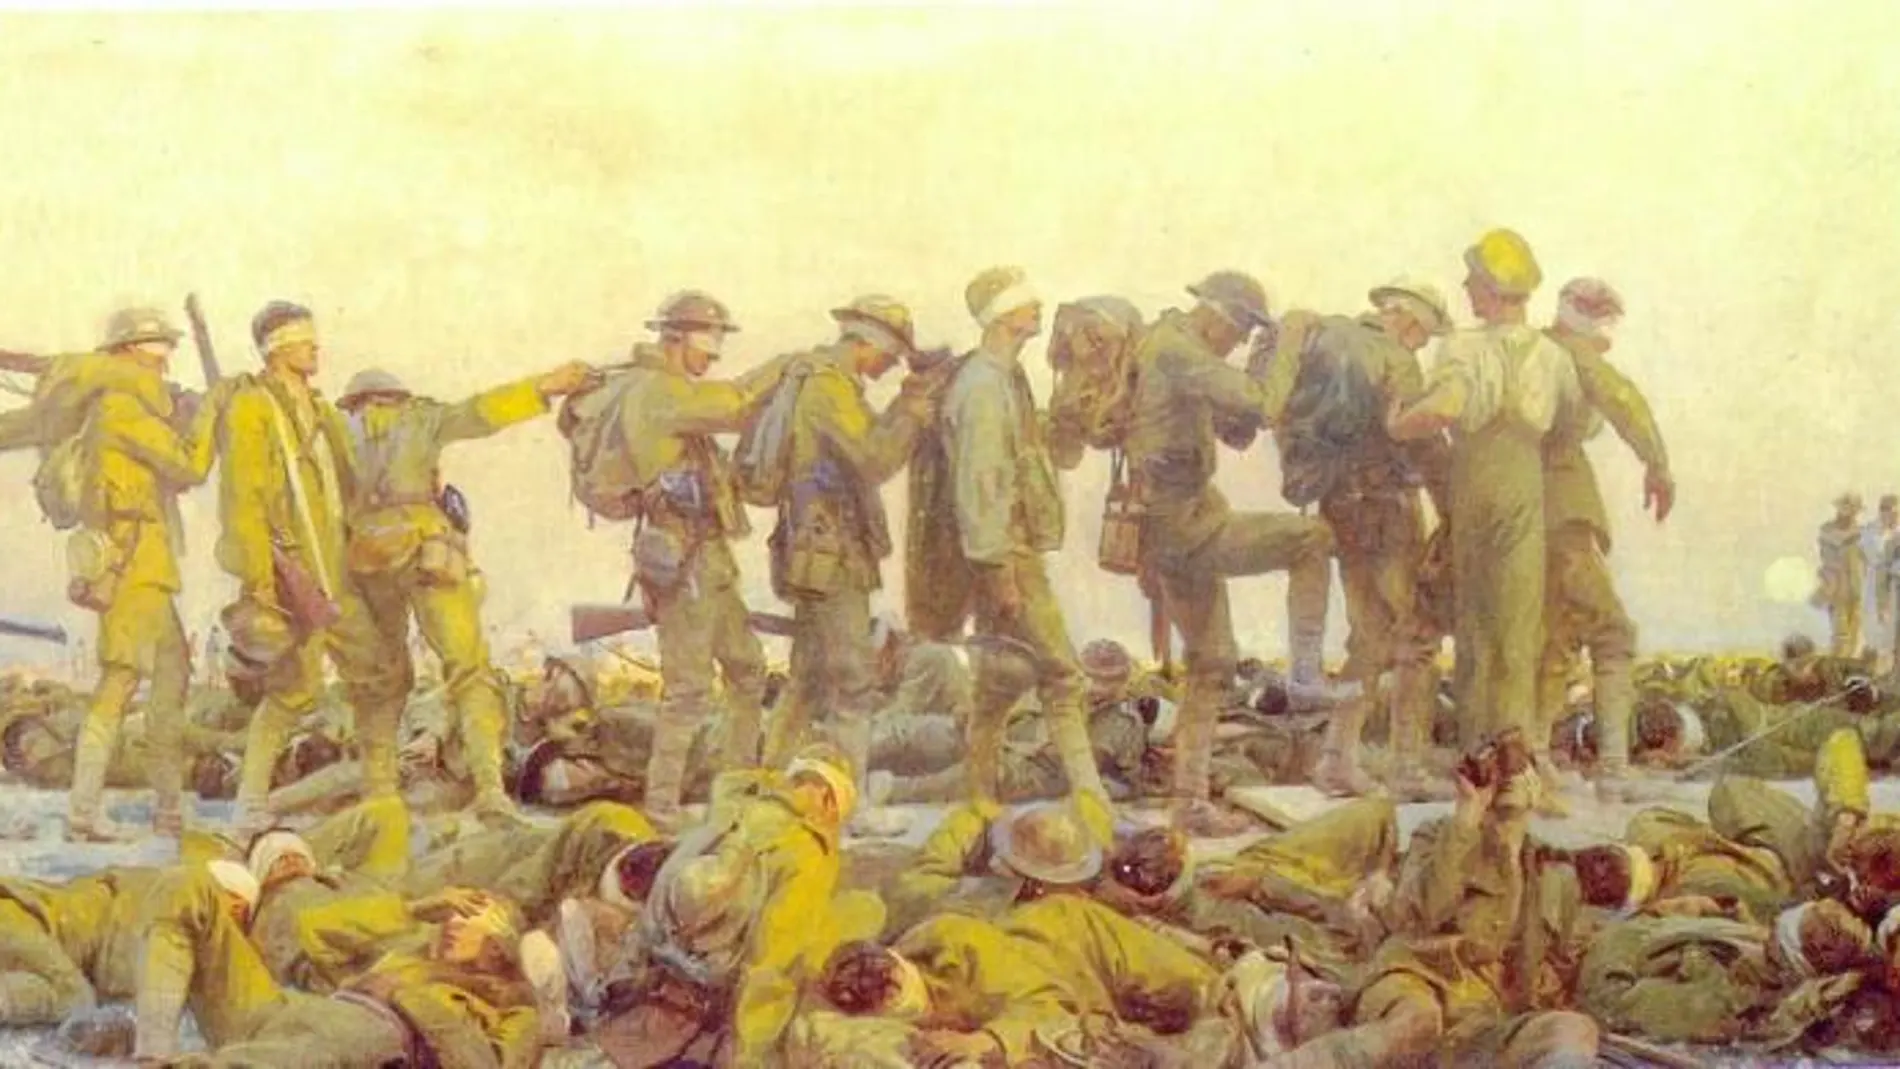 Las crónicas de Agustí Calvet sobre uno de los dramáticos episodios de la Primera Guerra Mundial siguen siendo de gran vigencia